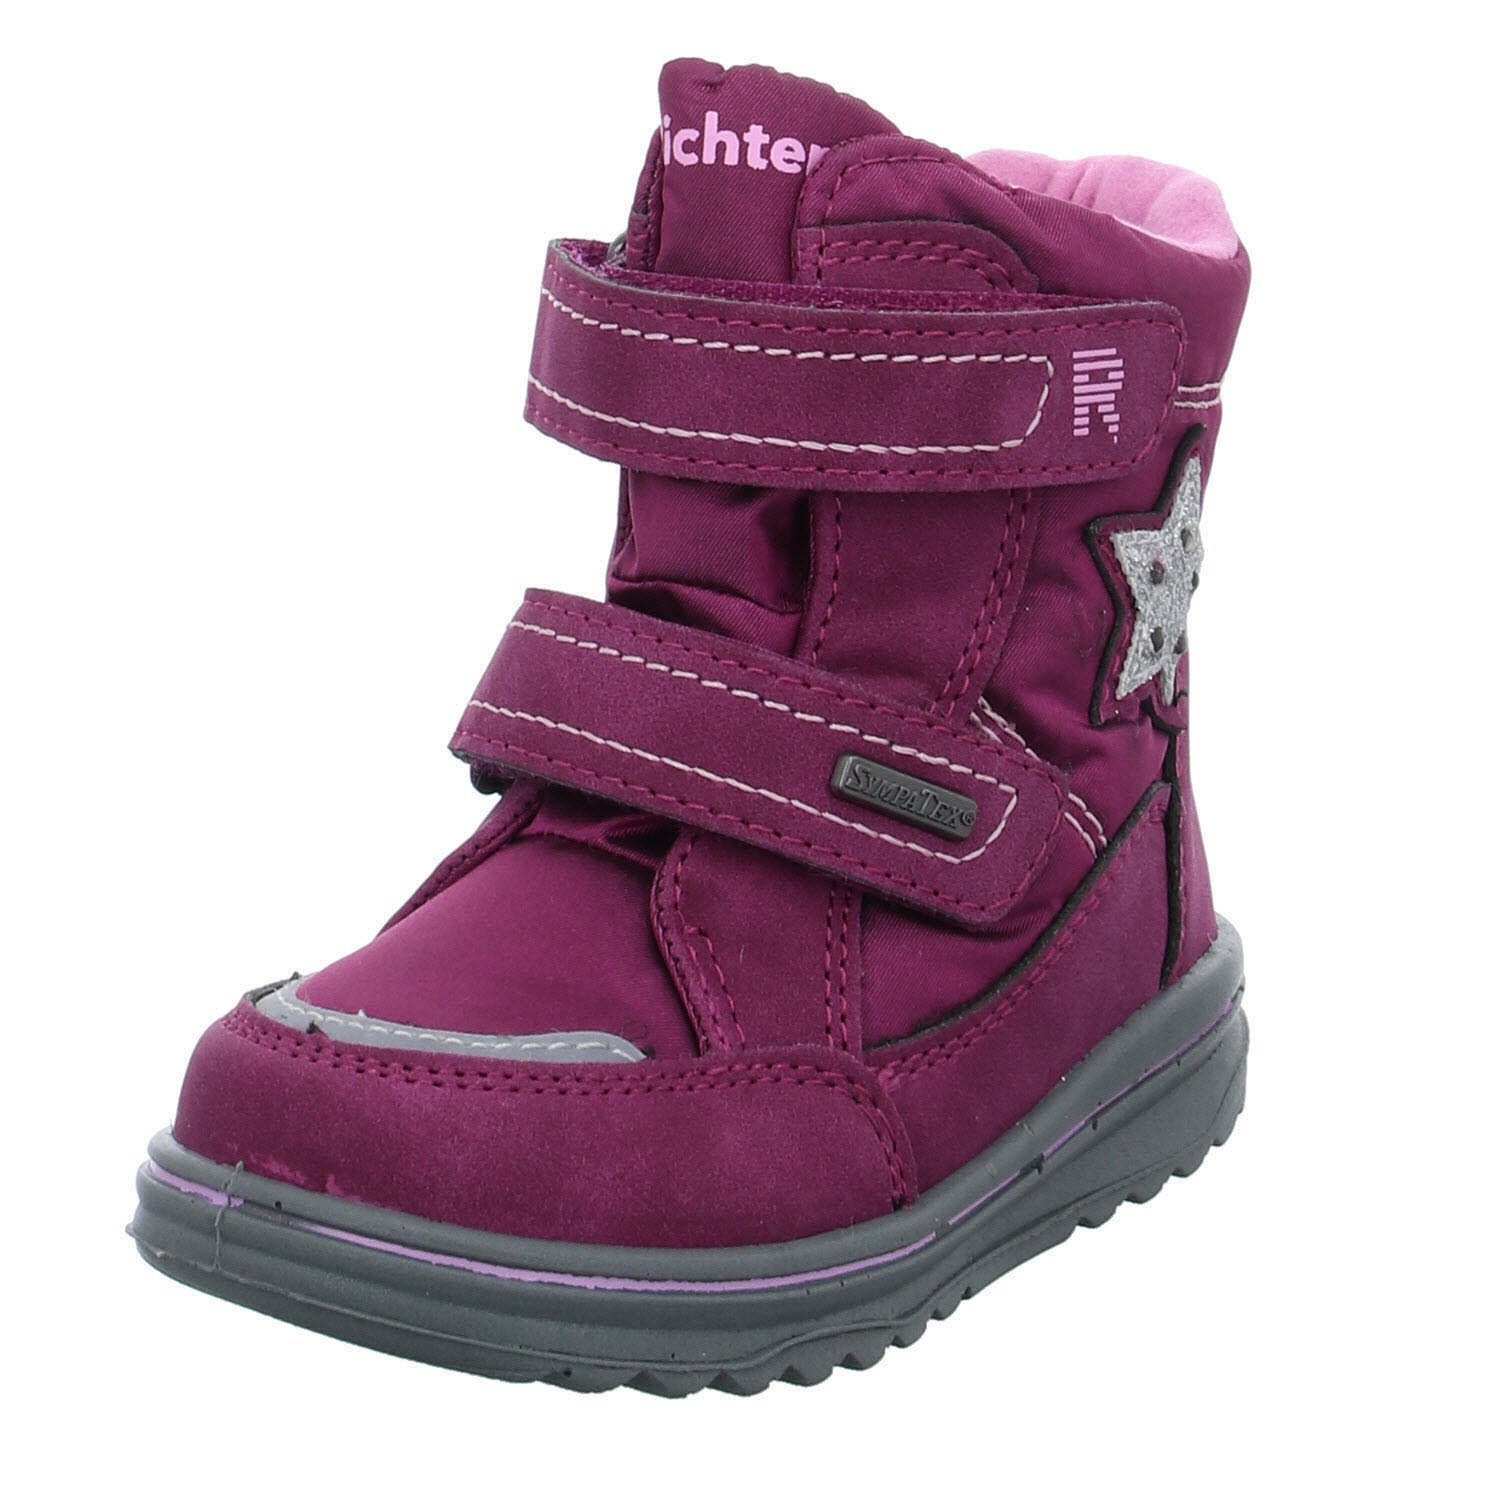 Richter »Kinderschuhe Kinderstiefel Schuhe Boots« Stiefel online kaufen |  OTTO